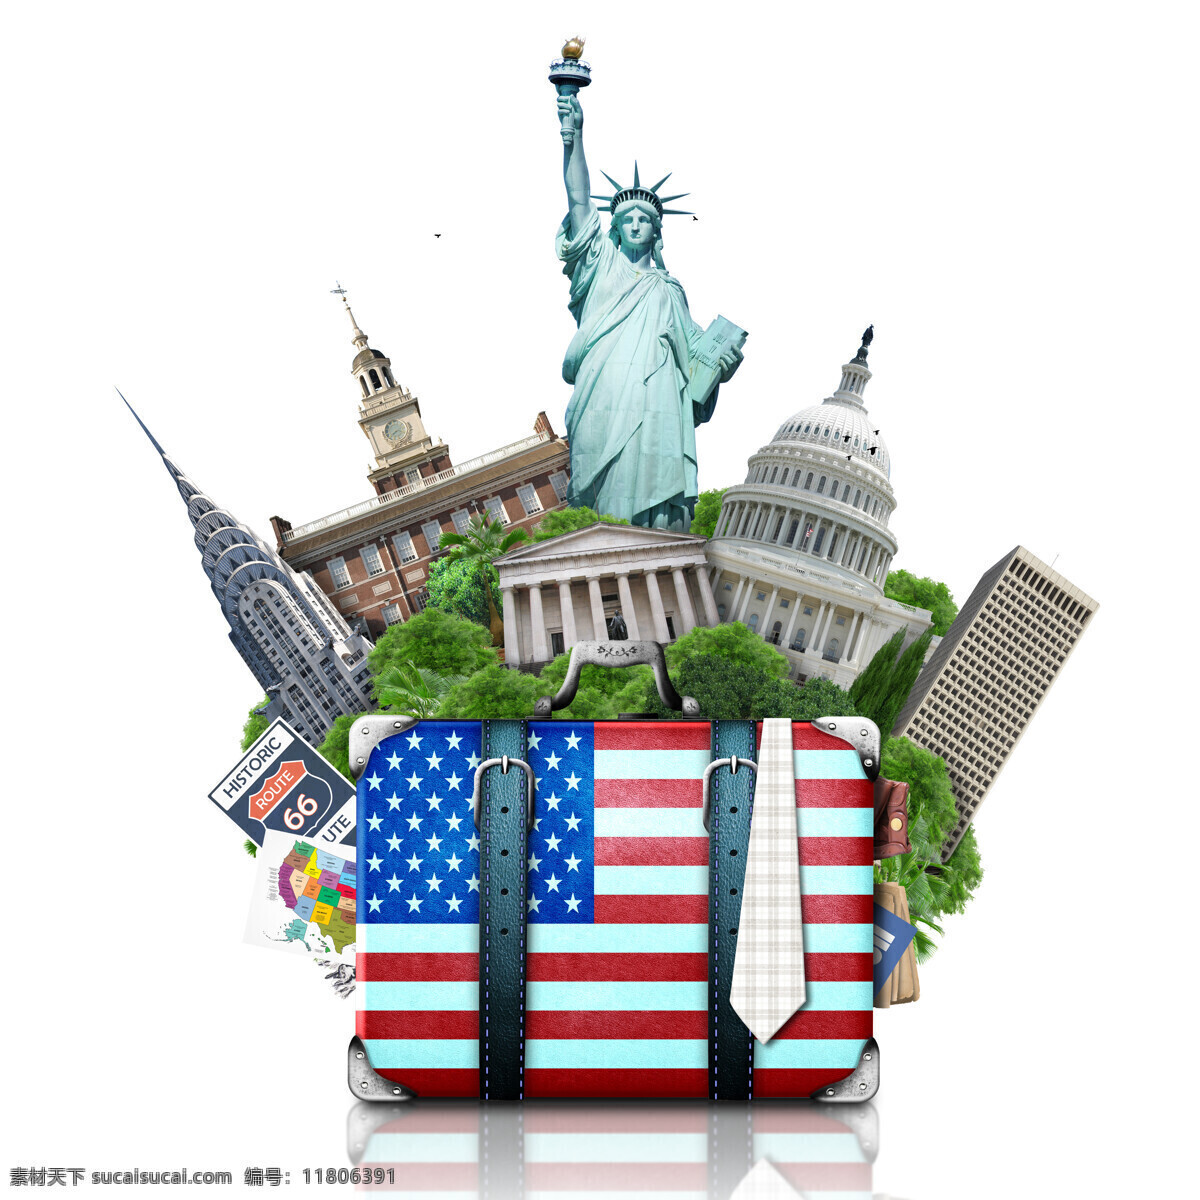 美国旅游 创意旅游 旅游 美国 美国风景 出国游 美国标志建筑 美国著名建筑 美国景点 自由女神 林肯纪念堂 白宫 旅游素材